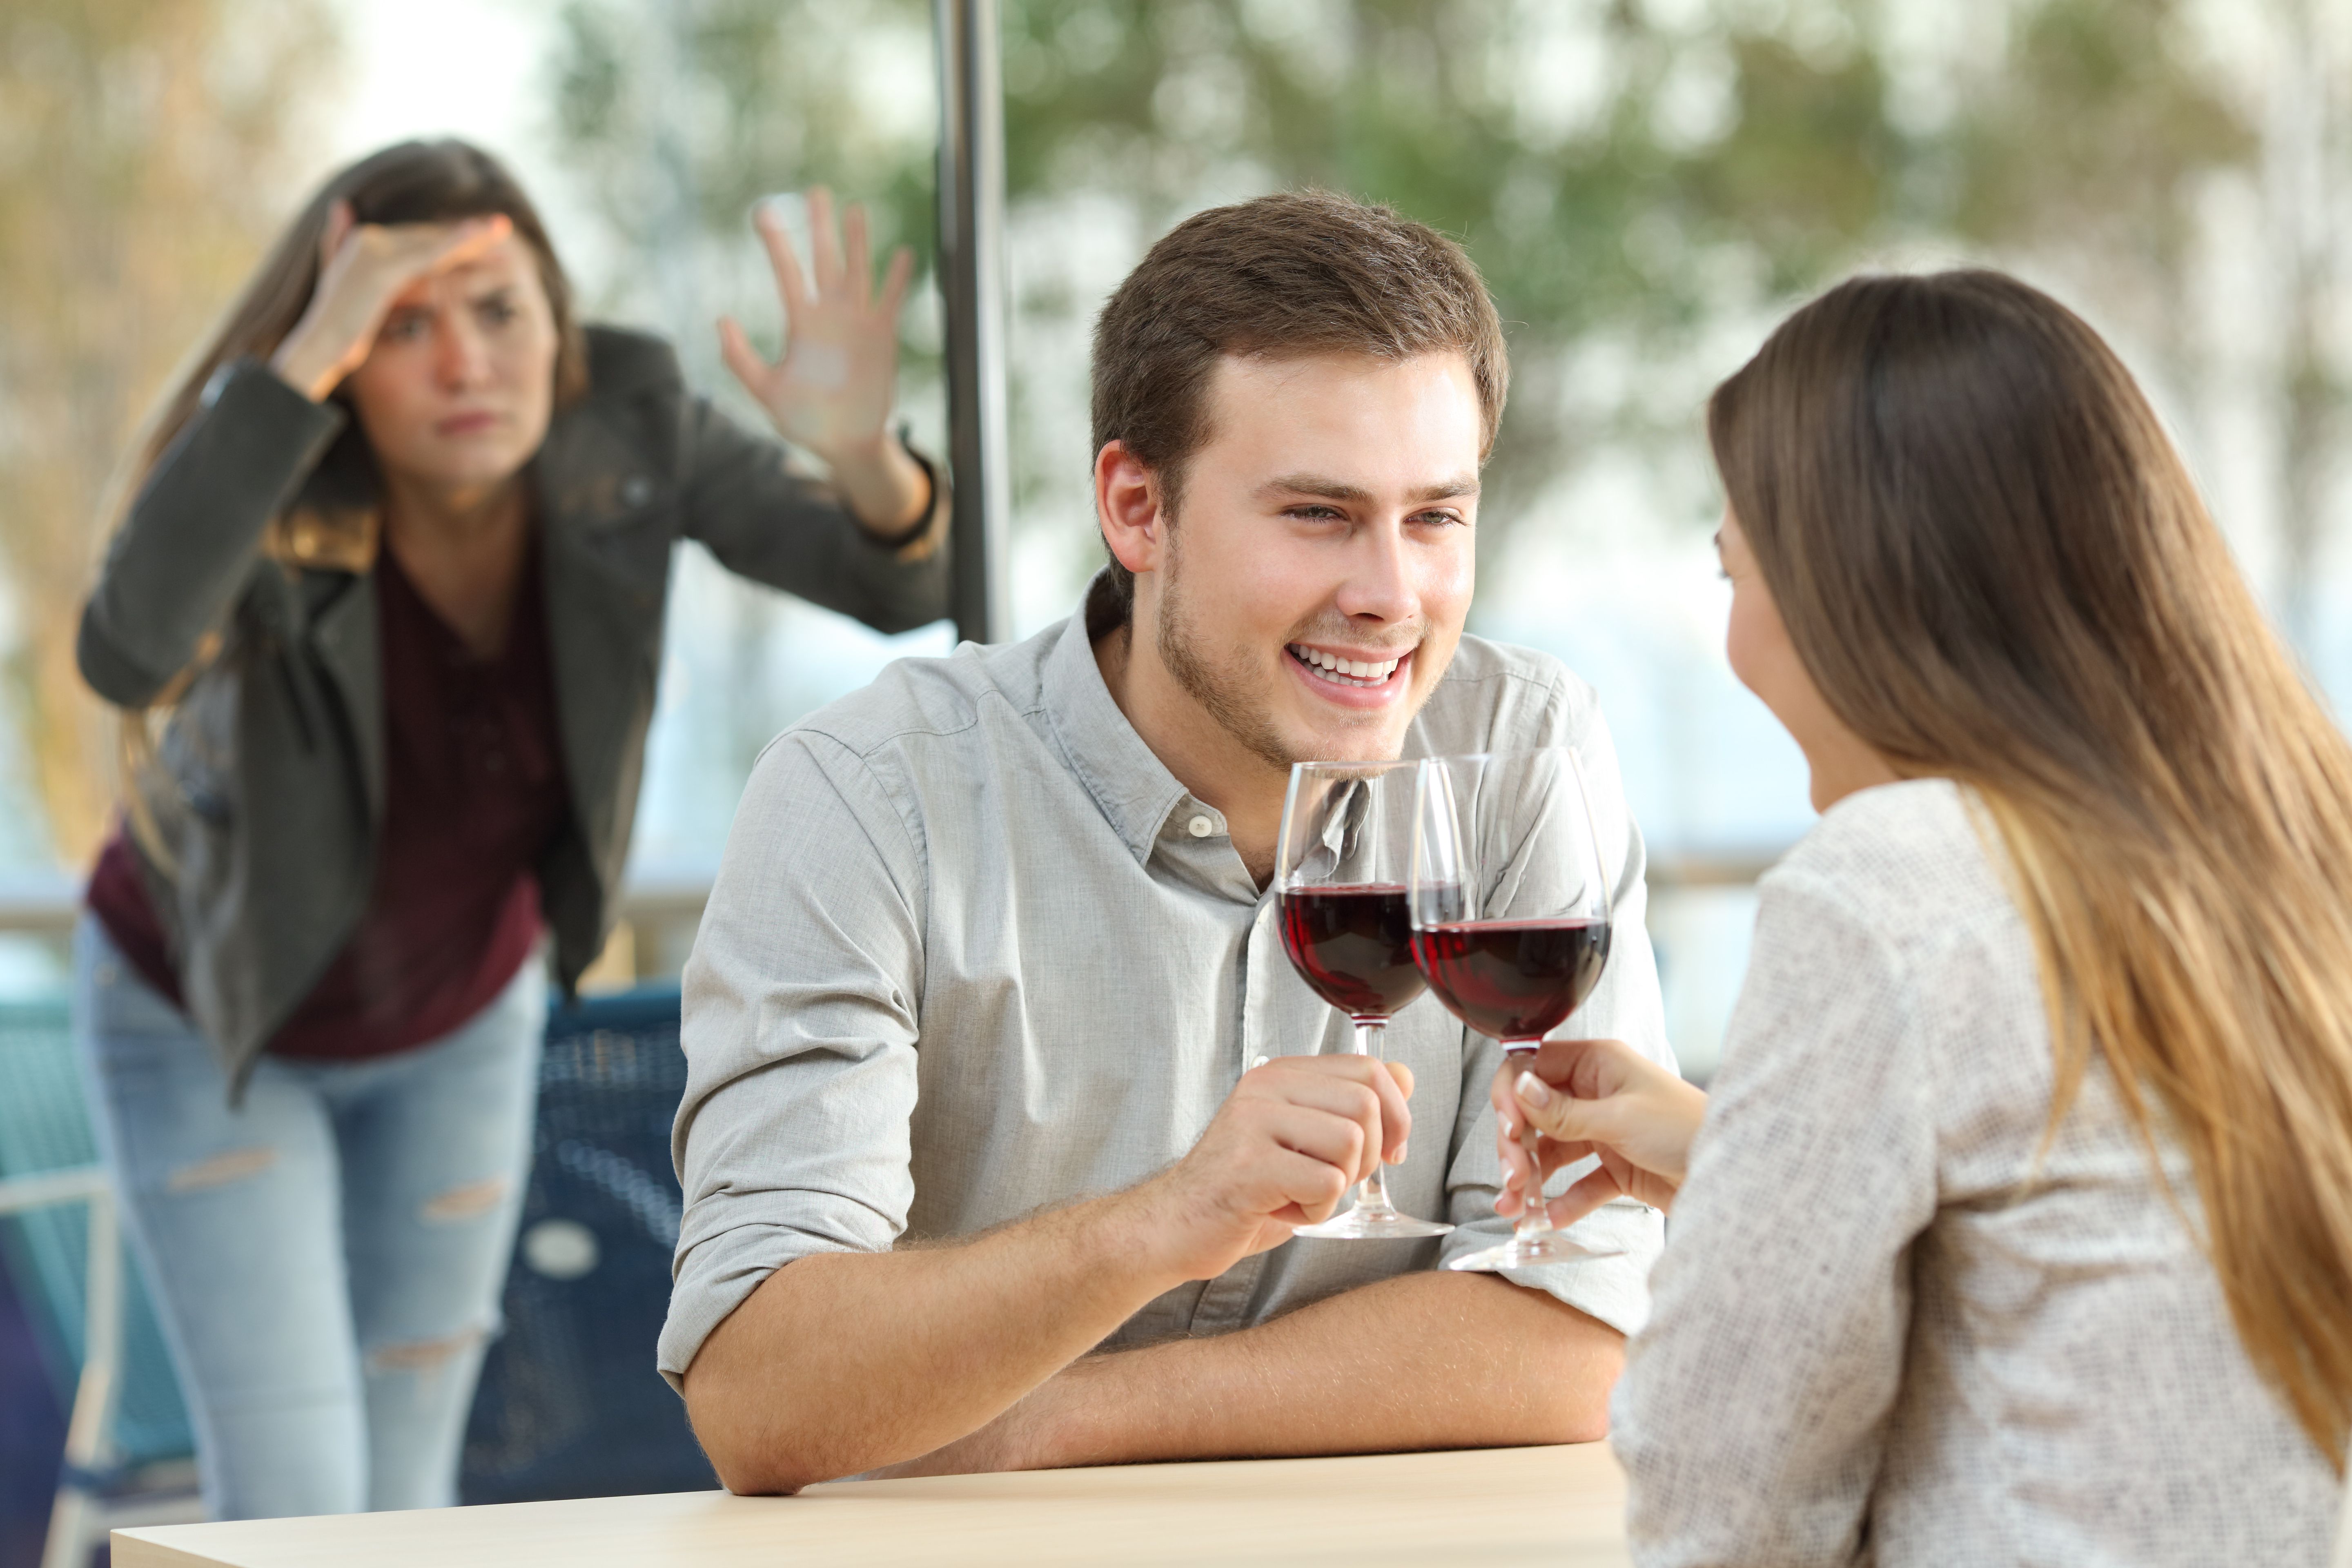 Une femme regarde par la vitre un couple en train de boire du vin | Source : Shutterstock